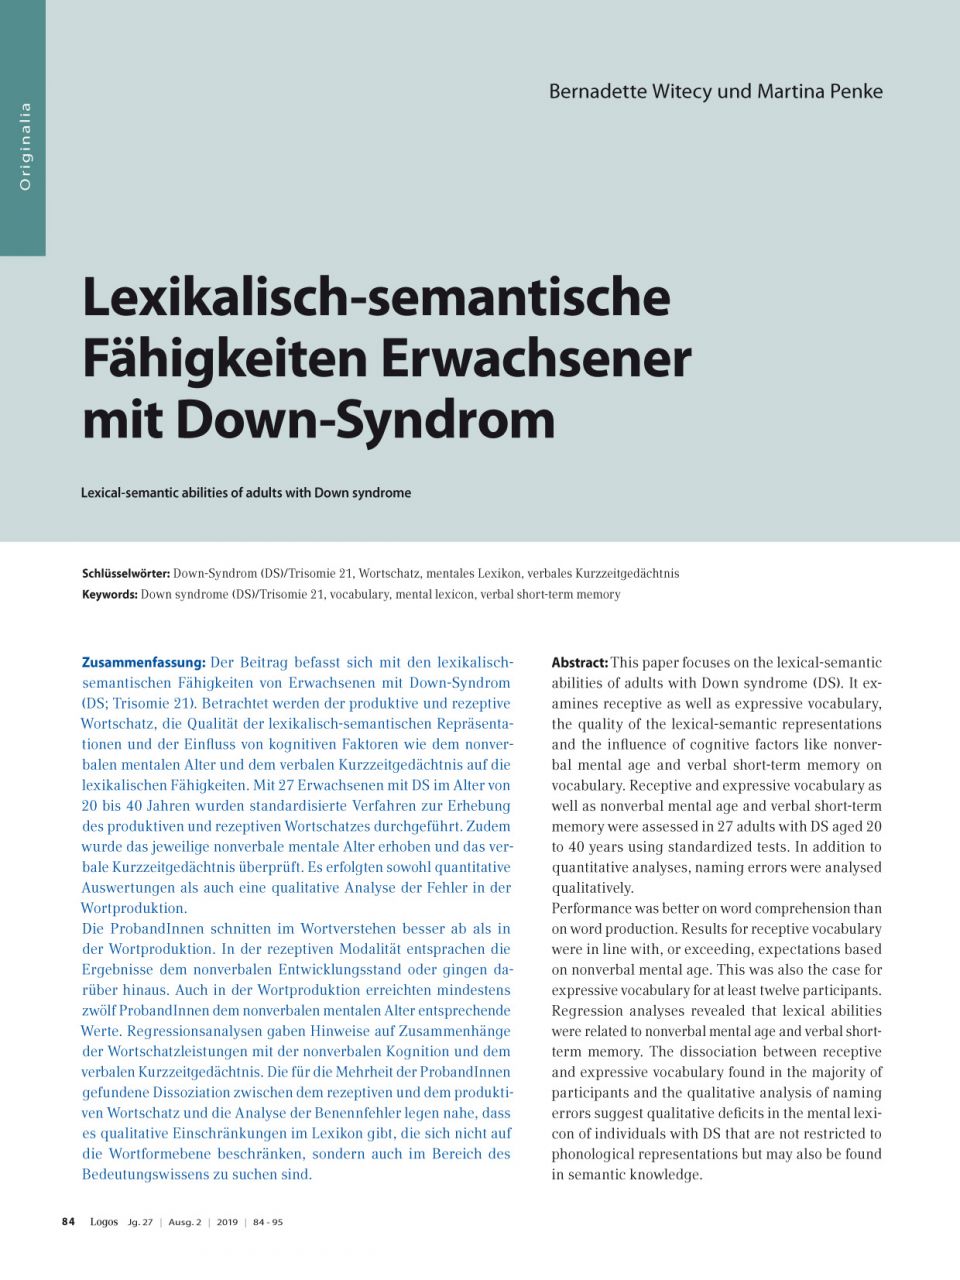 Lexikalisch-semantische Fähigkeiten Erwachsener mit Down-Syndrom